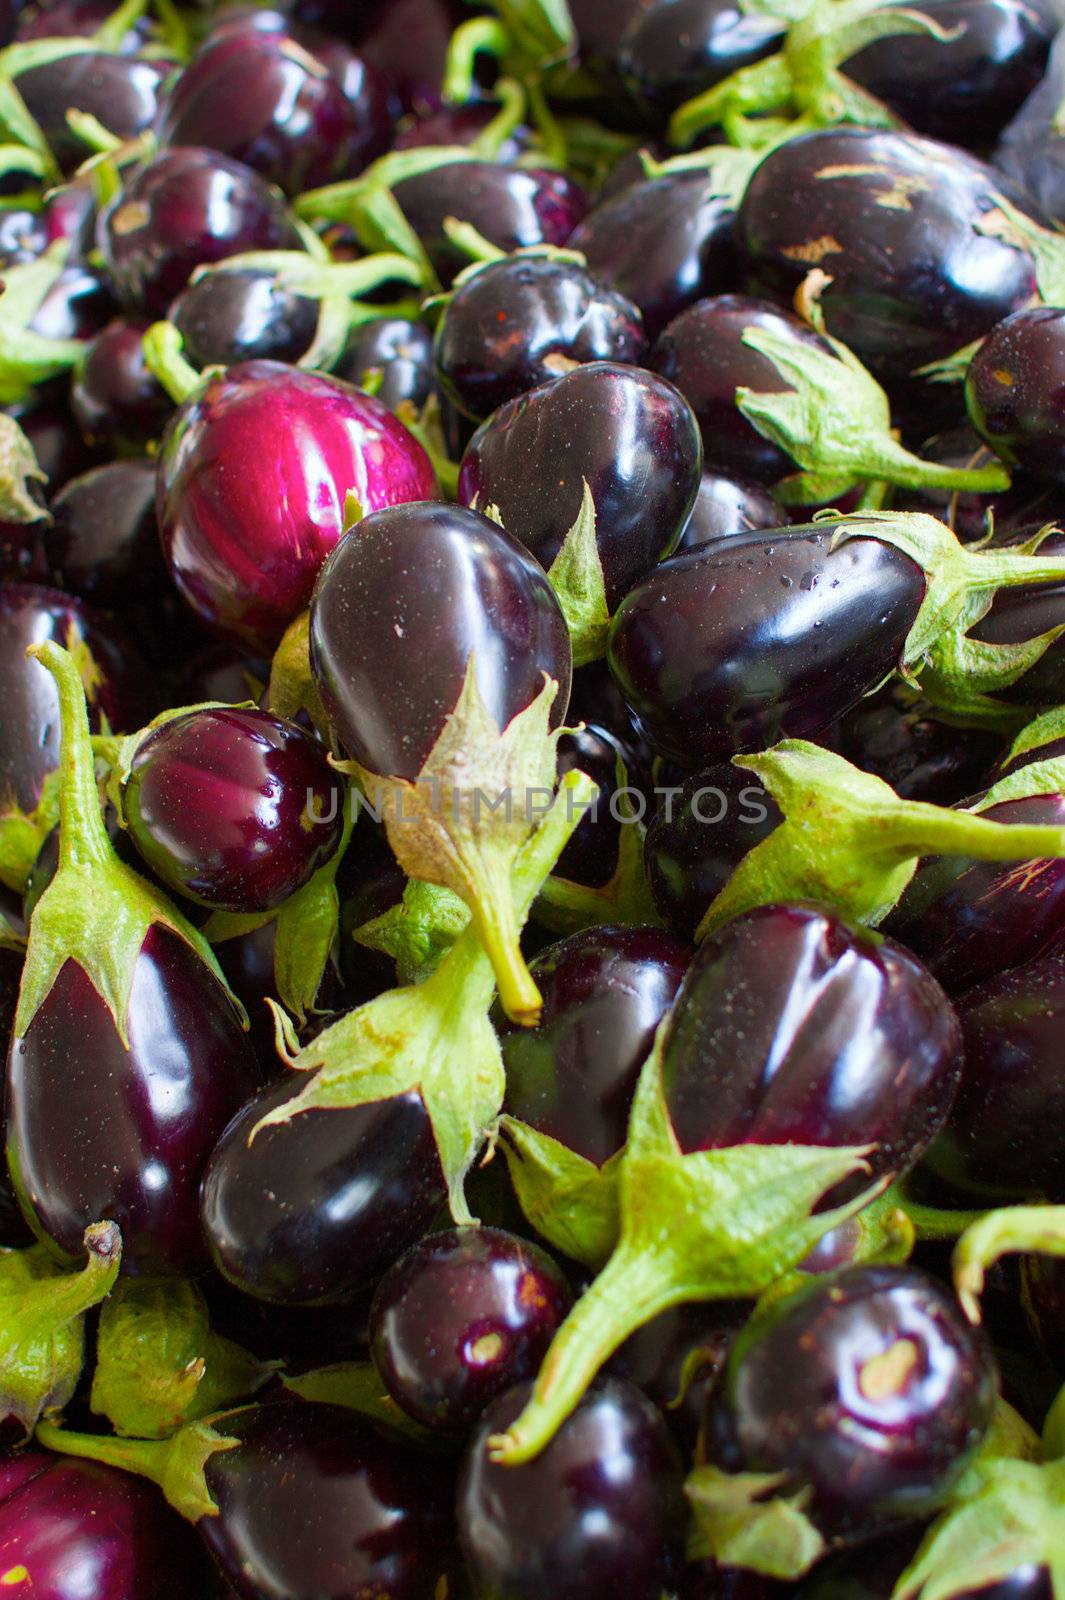 Pile of Eggplants b by bobkeenan